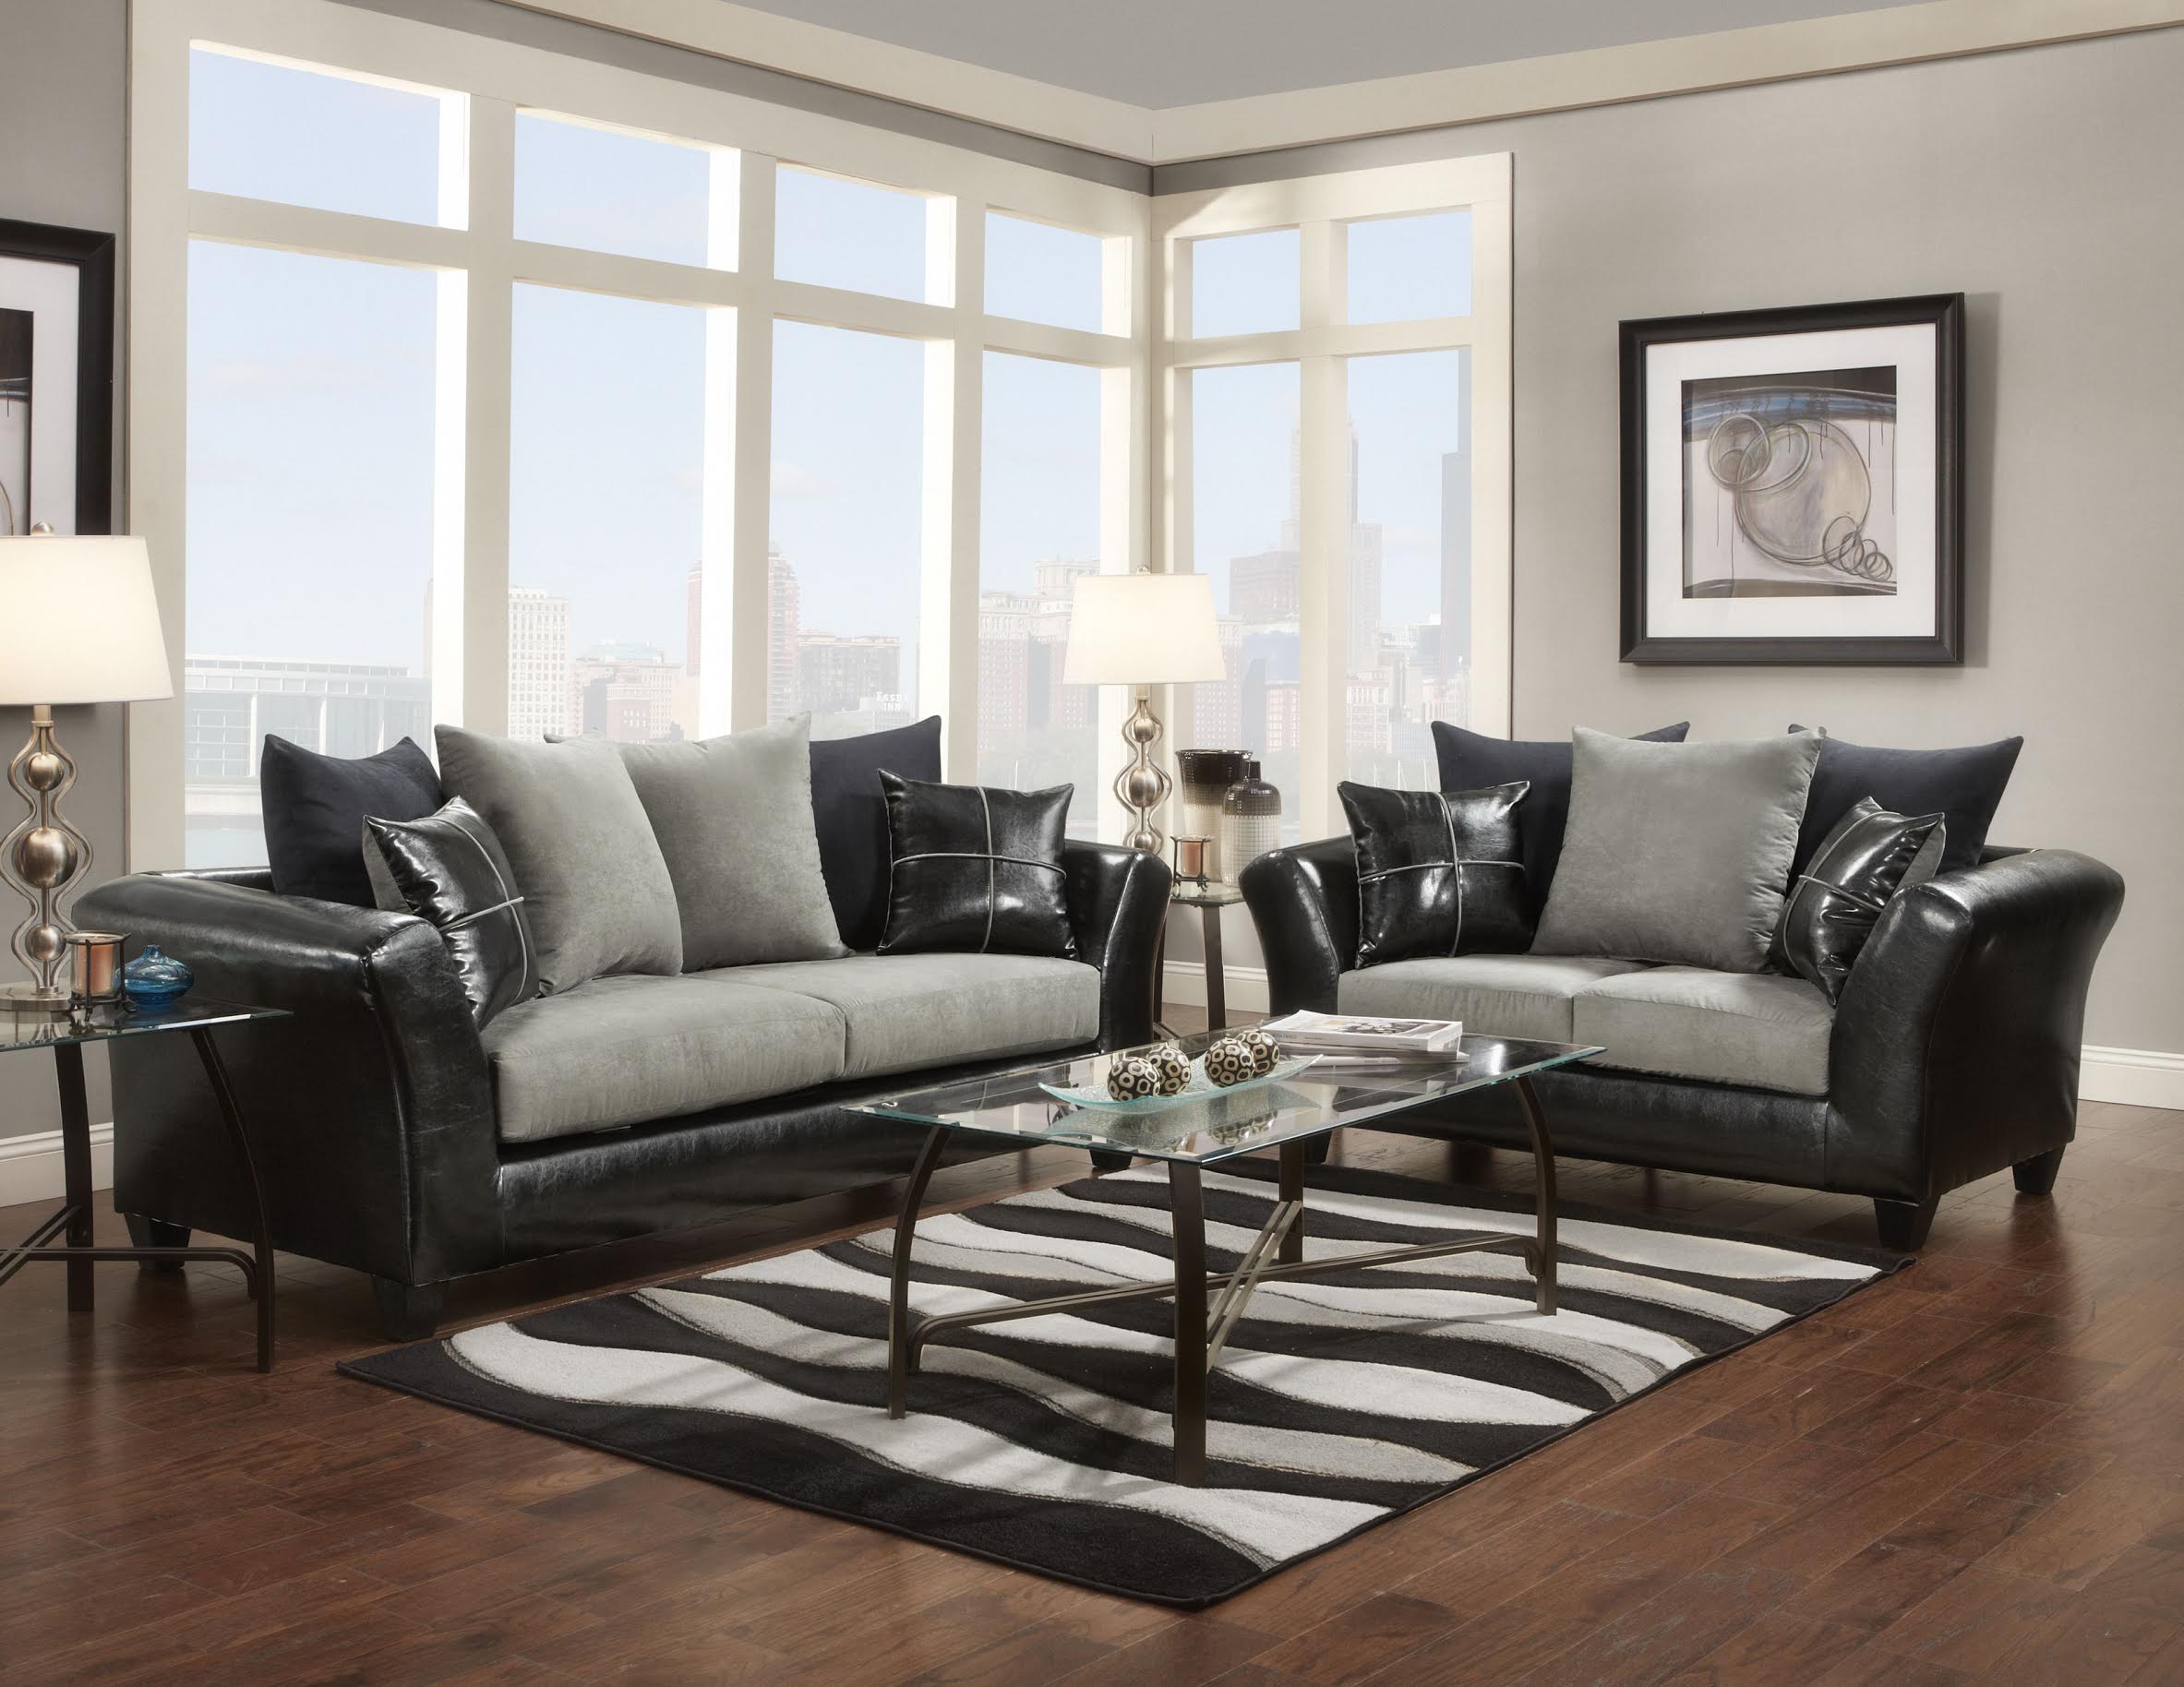 furniture deals living room furniture